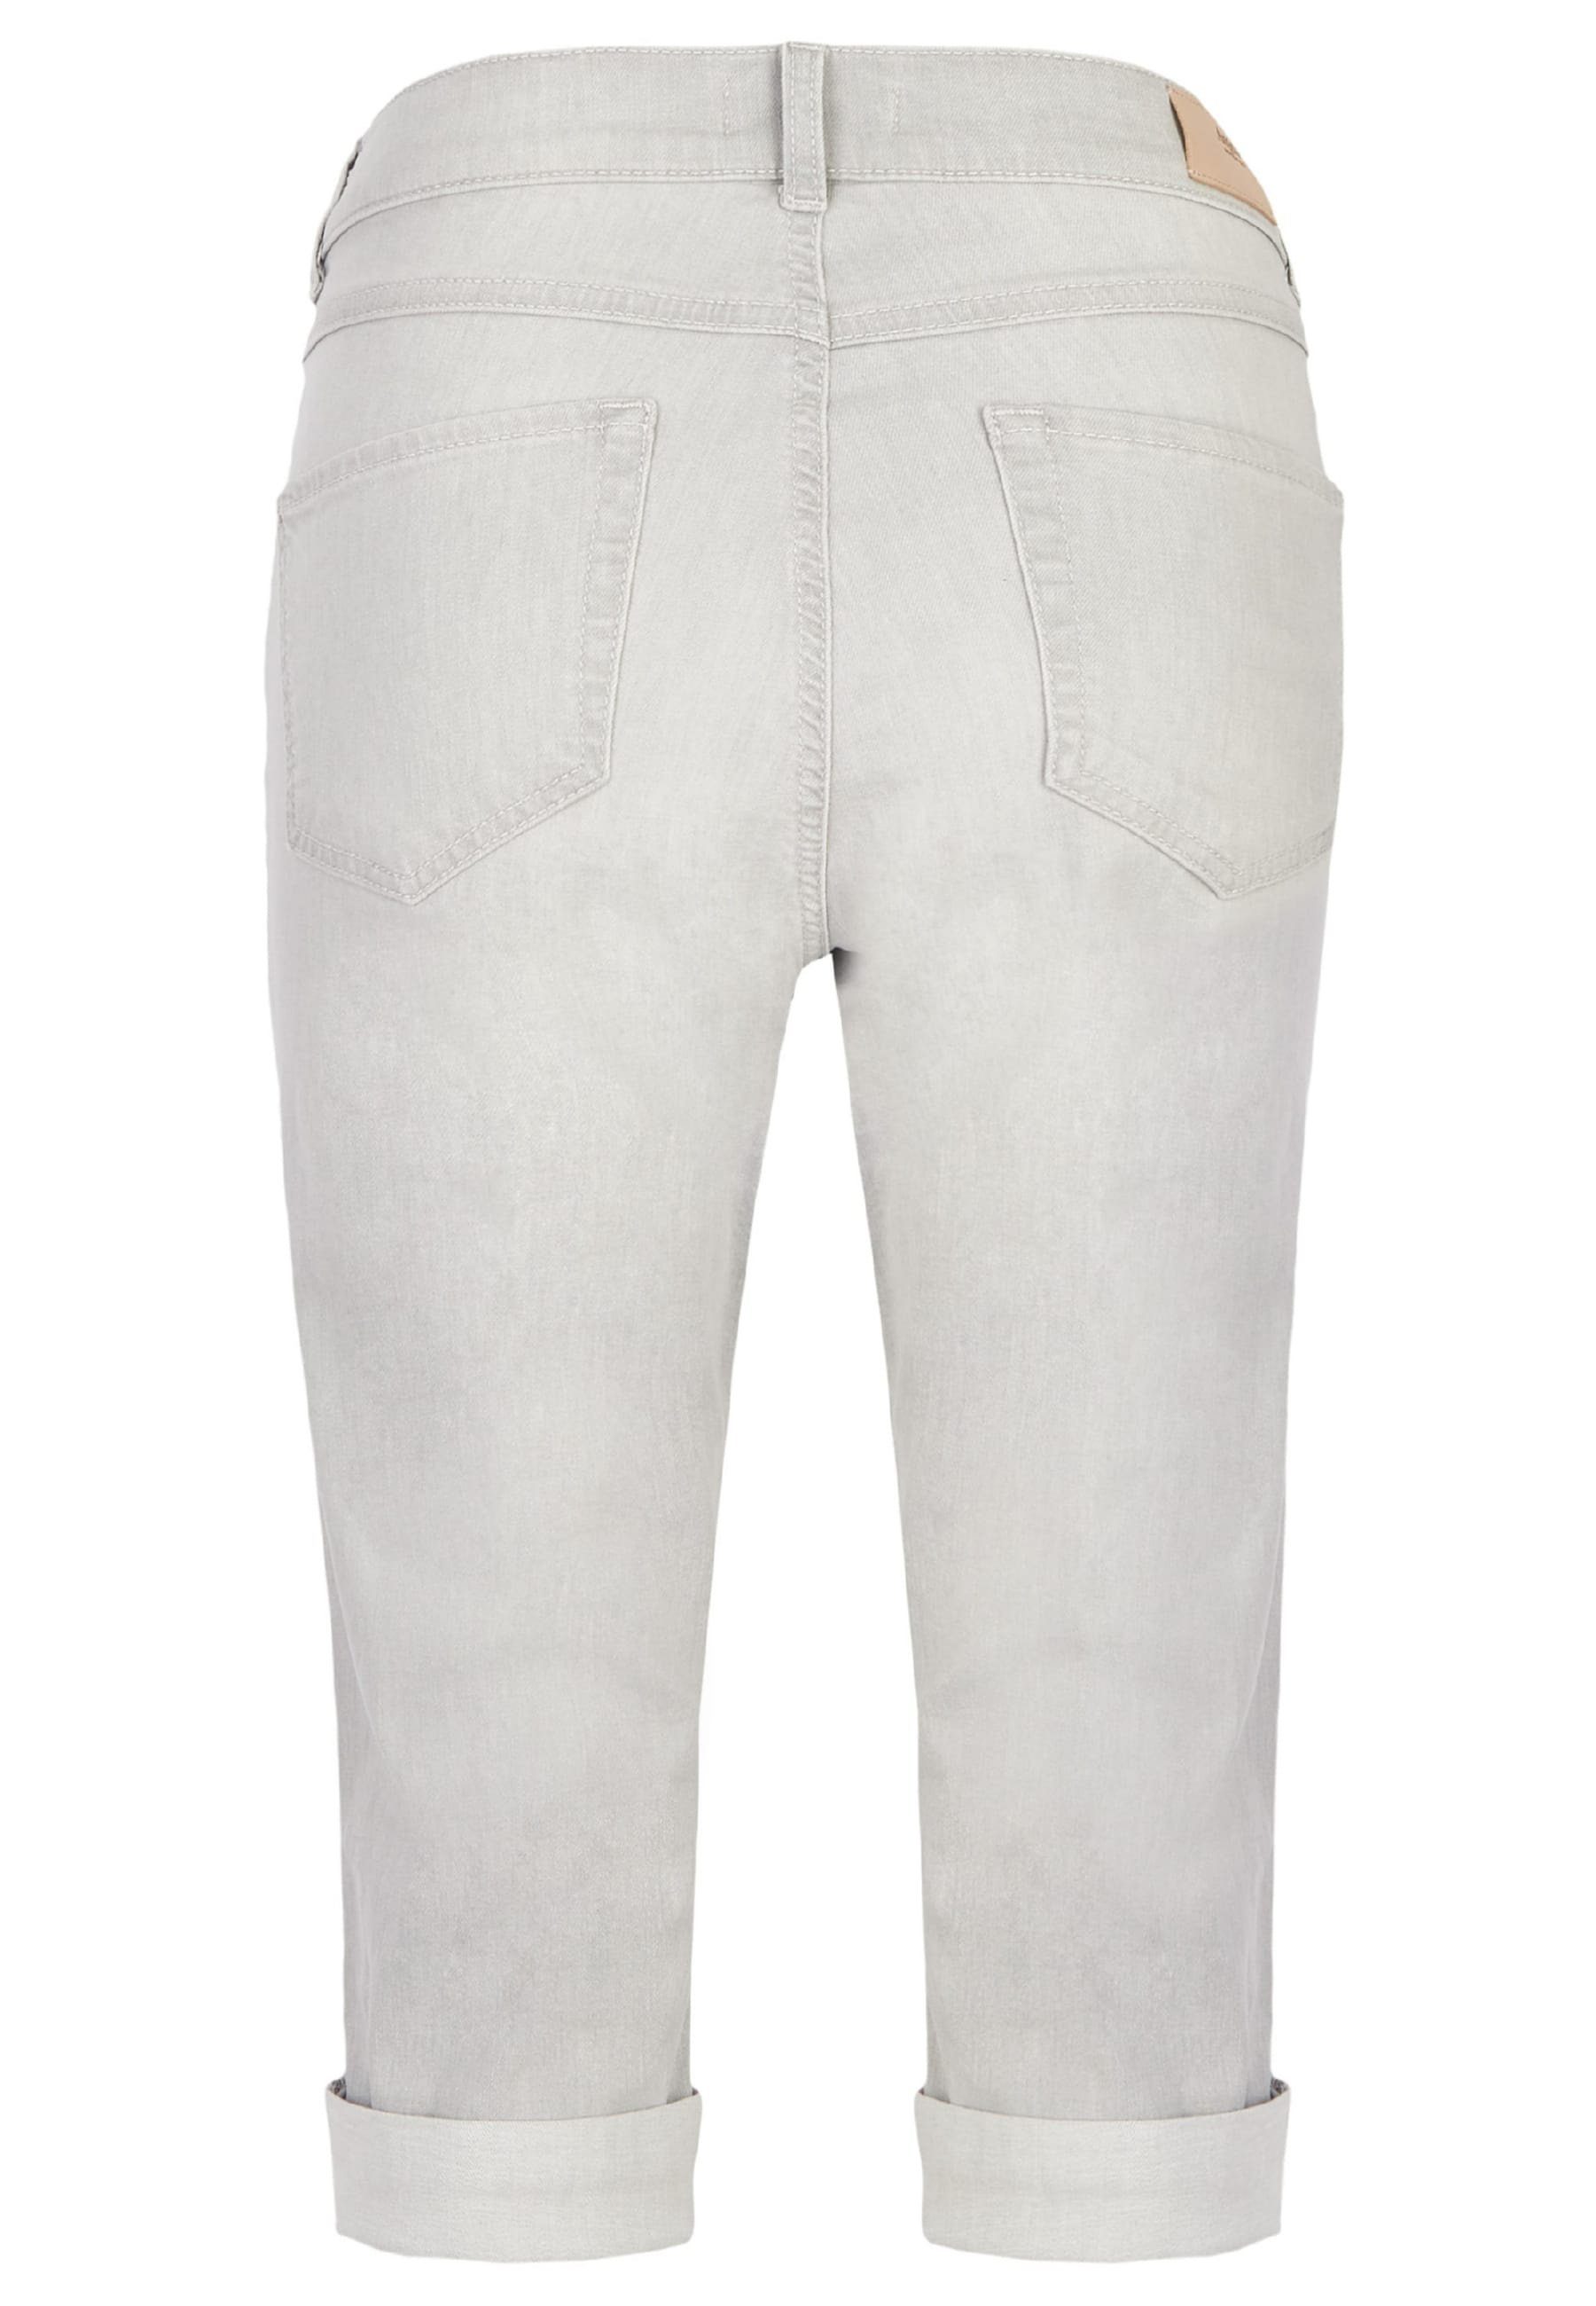 ANGELS 5-Pocket-Jeans Jeans hellgrau Used-Look Capri Label-Applikationen mit mit TU